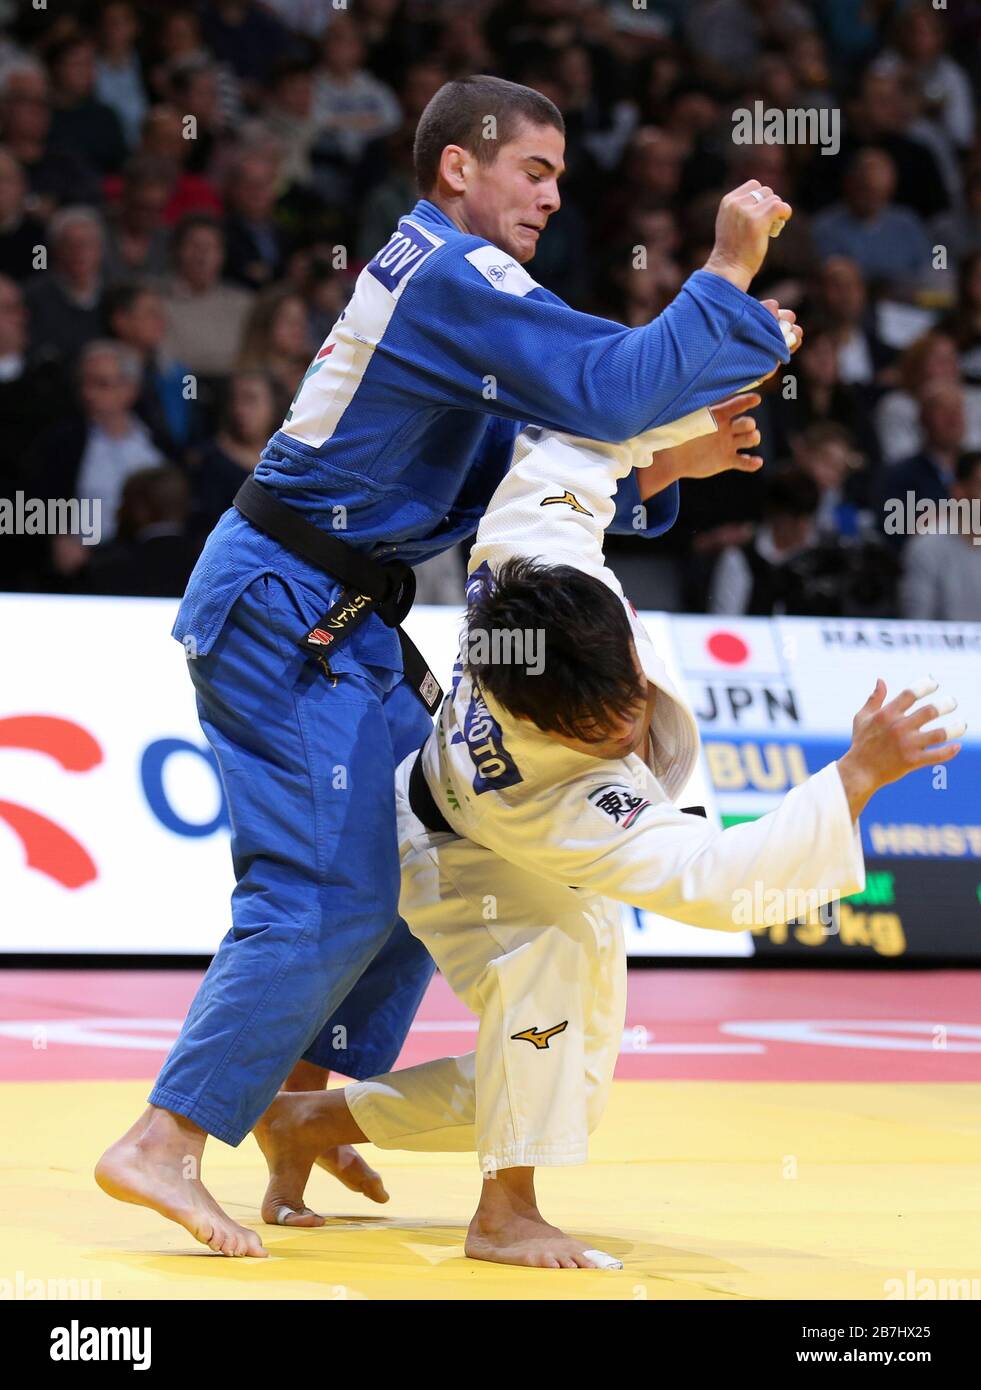 Paris, France - 8 février 2020: Soichi Hashimoto pour le Japon contre Hristov pour la Bulgarie, hommes -73 kg, quatrième manche (crédit: Mickael Chavet) Banque D'Images